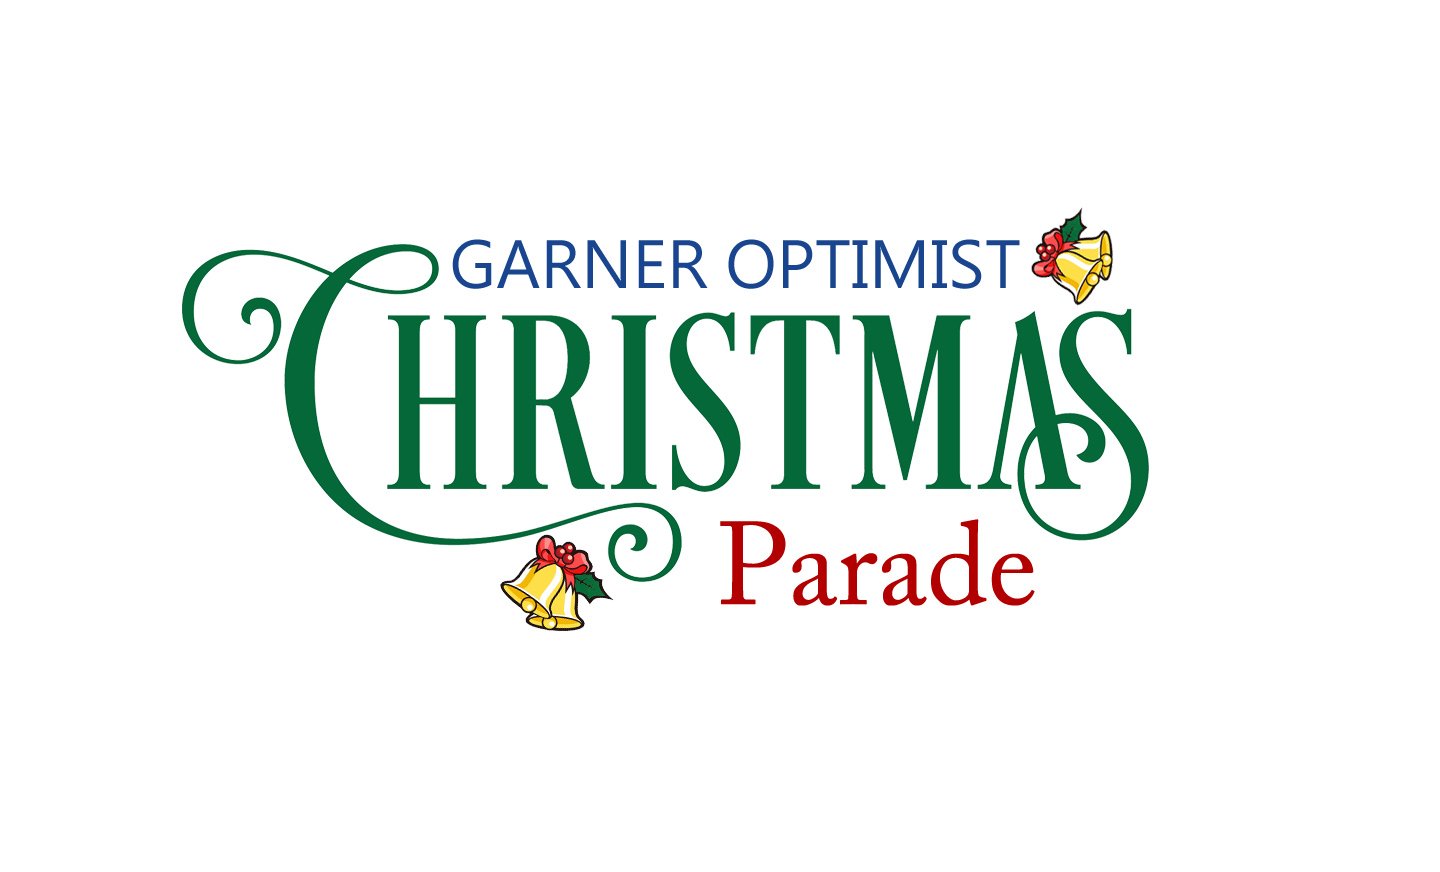 The Garner Christmas Parade